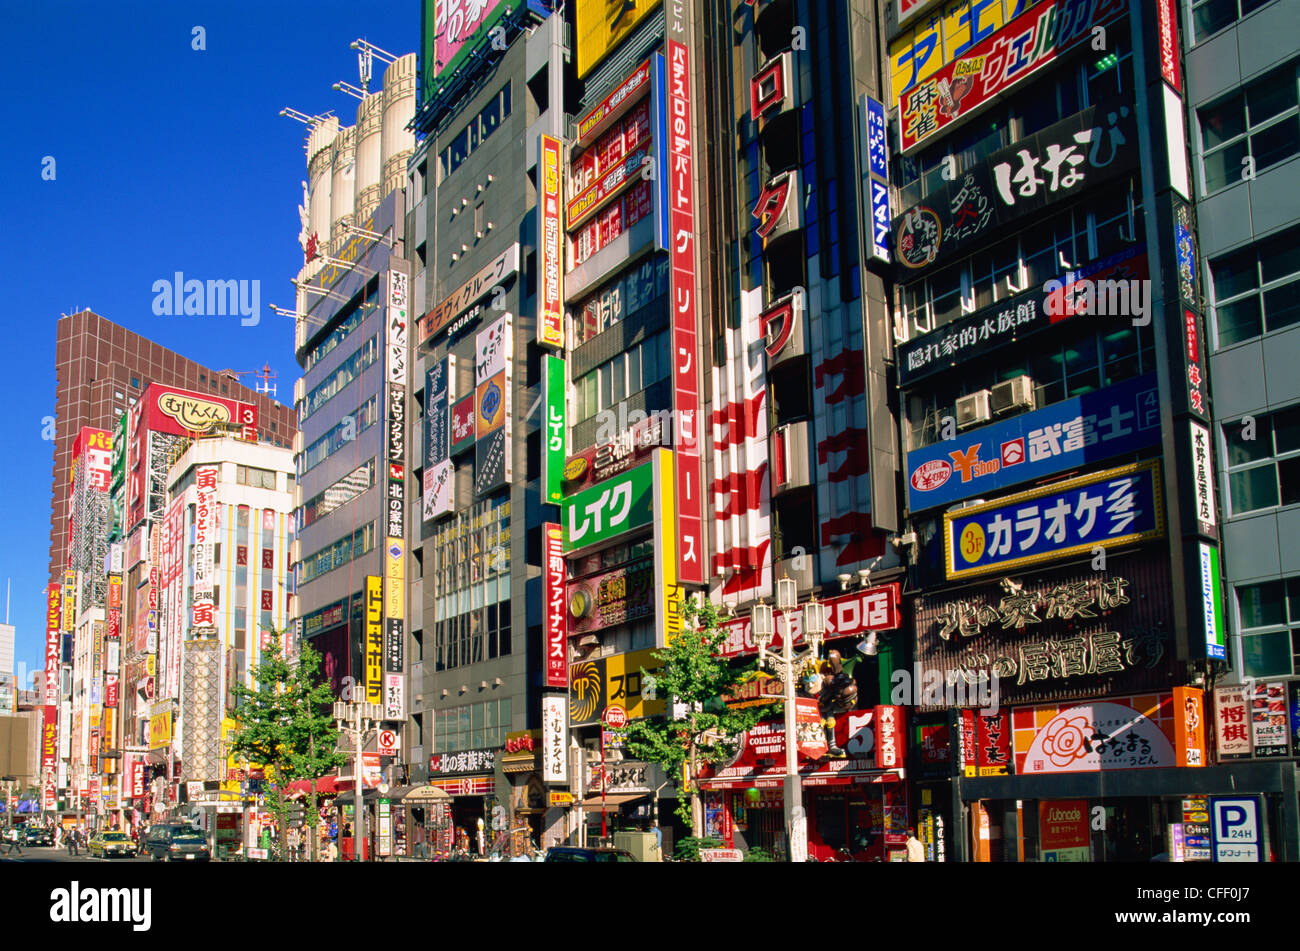 Japan, Honshu, Tokyo, Shinjuku, Yasukuni Dori Street Scene Stock Photo